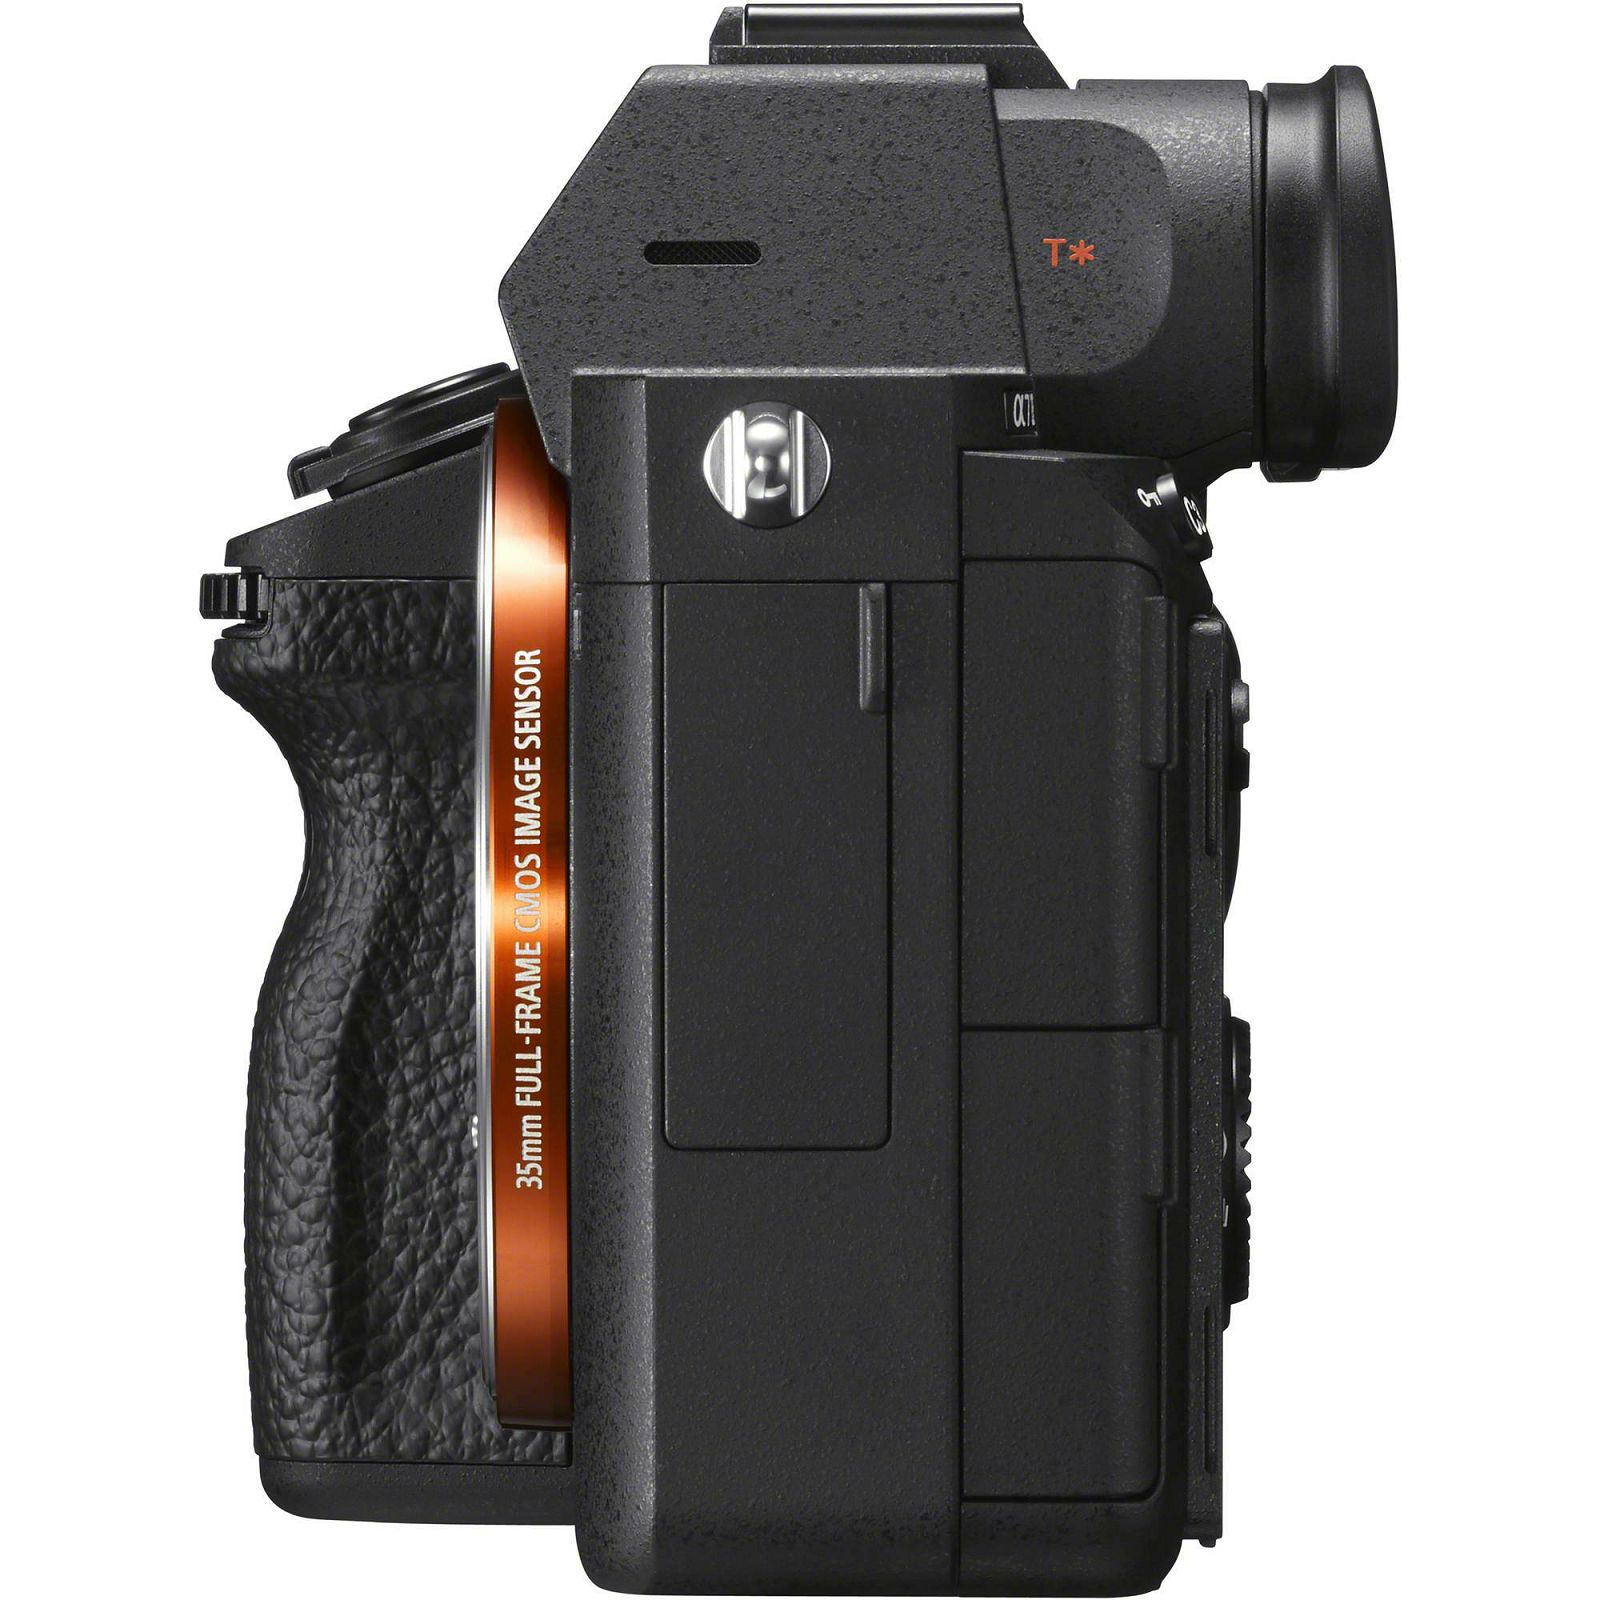 Sony Alpha a7 III + 24-105mm f/4 G OSS KIT Mirrorless Digital Camera bezrcalni digitalni fotoaparat i zoom objektiv SEL24105G FE 24-105mm f4 a7III  (ILCE7M3GBDI.EU) - LJETNA UŠTEDA